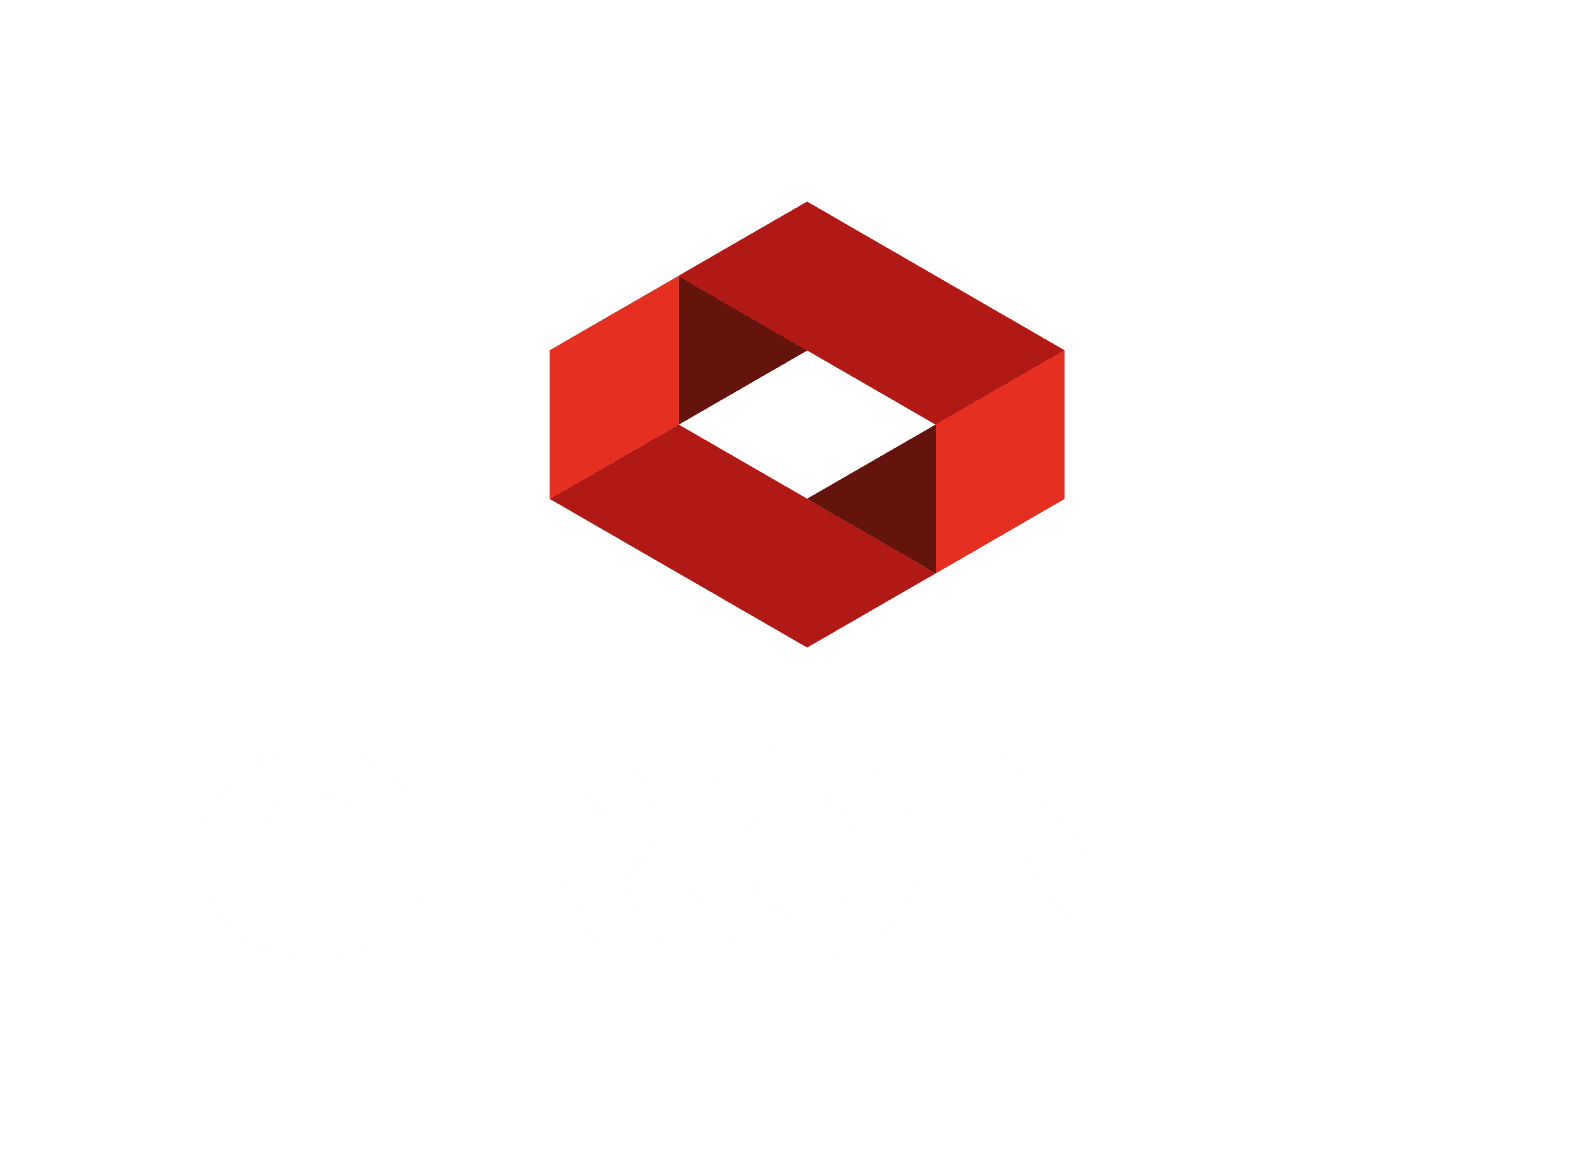 Crone logo